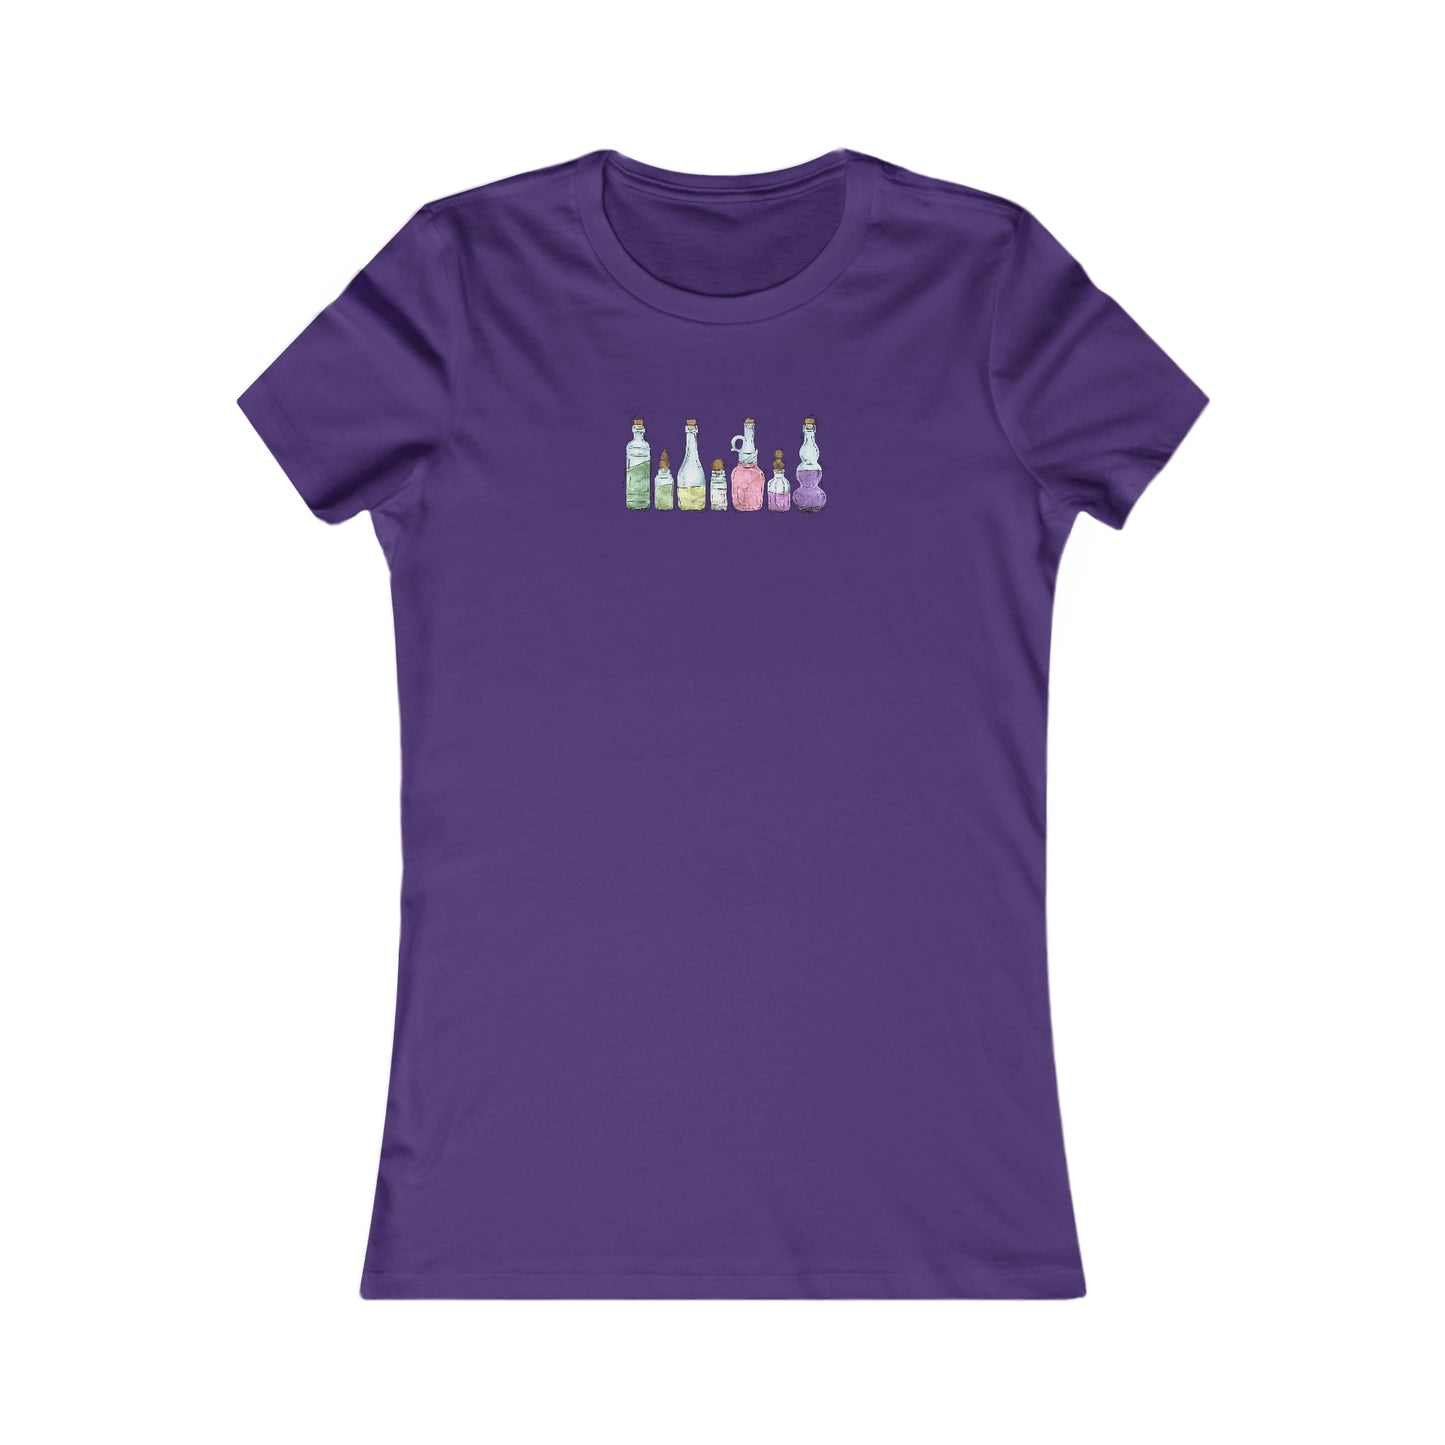 Genderfae Pride Flag Potion Bottles - Women's T-Shirt